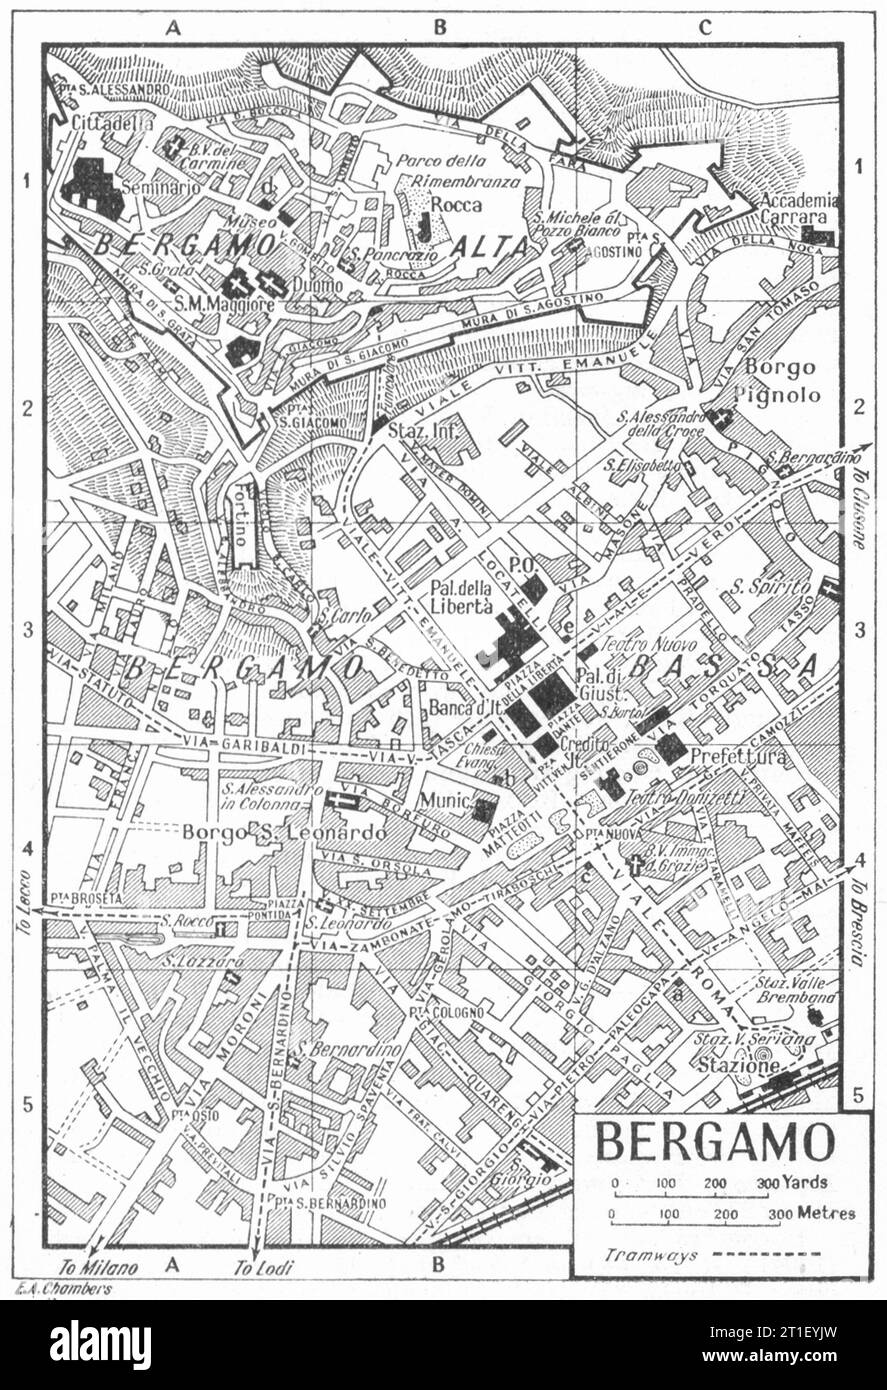 Piano città DI BERGAMO. Italia 1953 vecchia mappa d'epoca Foto Stock